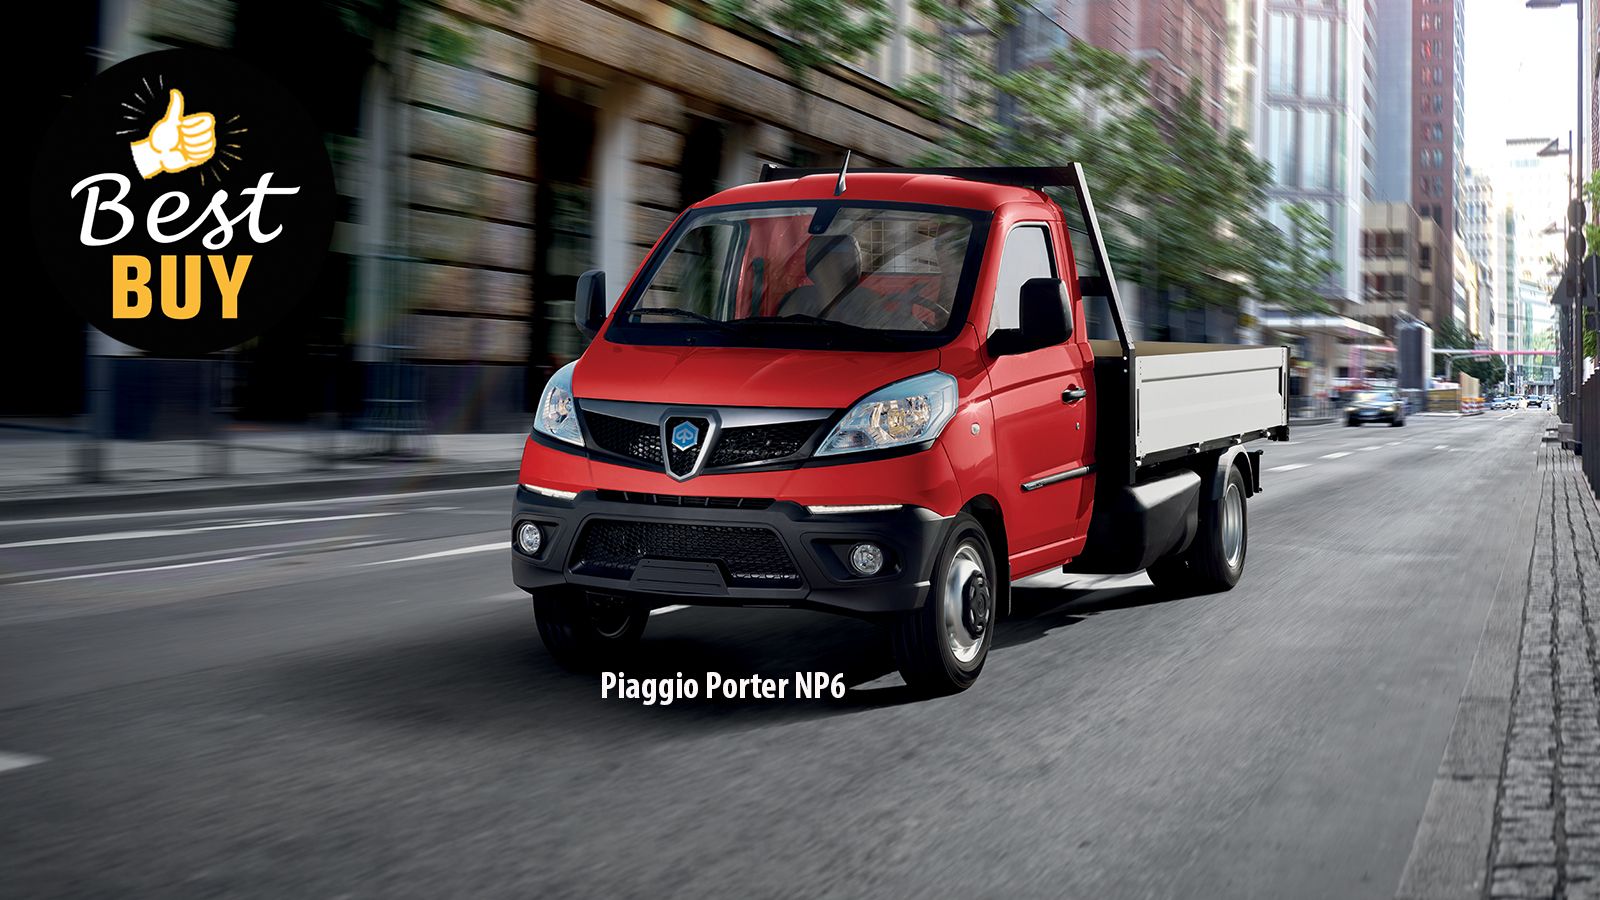 Συνολικά αναβαθμισμένο, σε δομικό, εξοπλιστικό και ποιοτικό υπόβαθρο το νέο Piaggio Porter NP6, προσφέρει πολλά περισσότερα στον ιδιοκτήτη του, σε πολλαπλούς τύπους χρήσης.